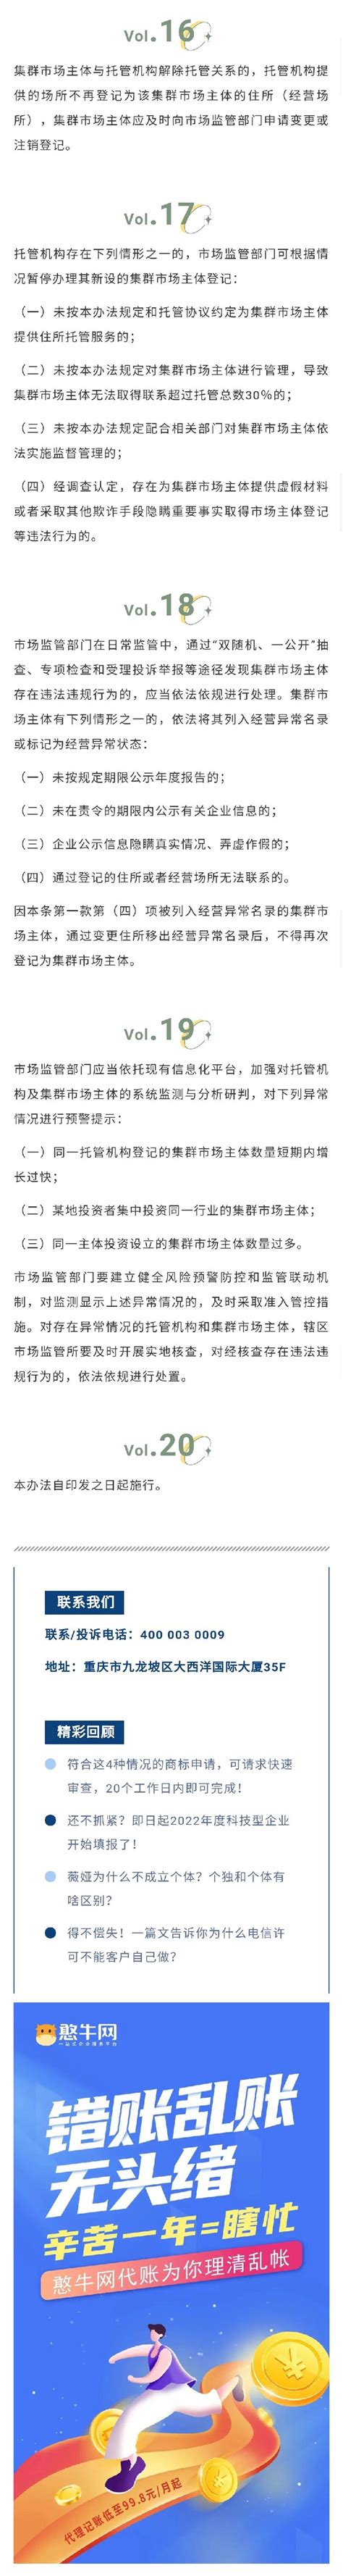 集群系统 - 上海比科翱商贸发展有限公司